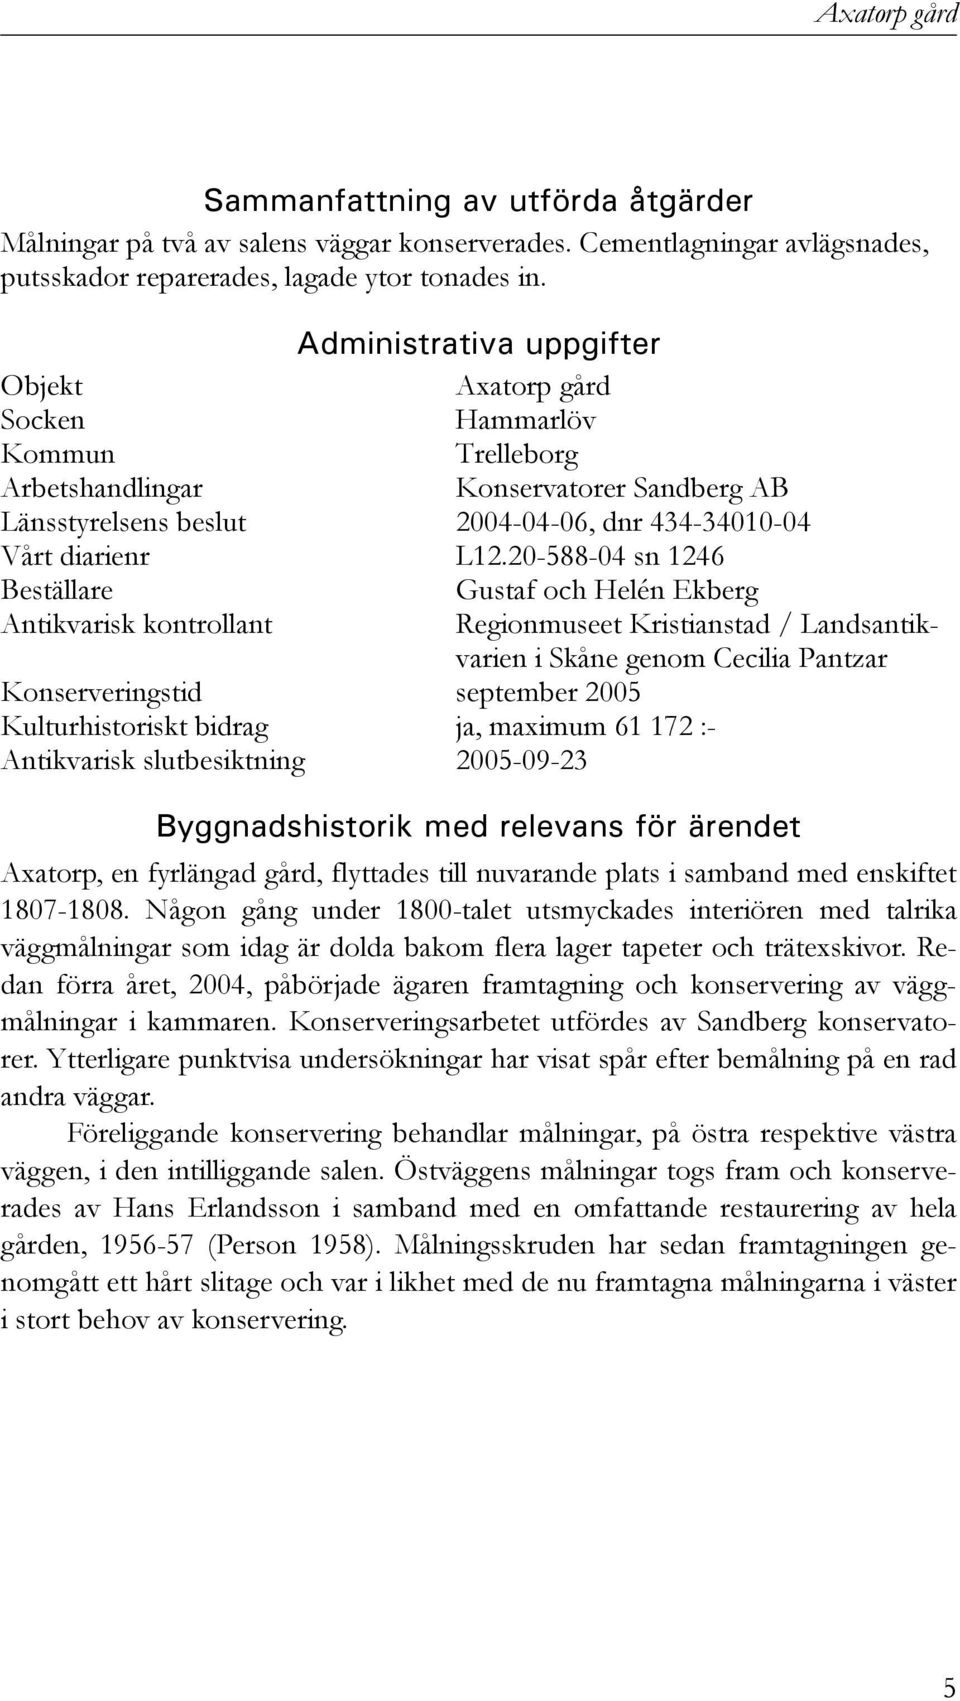 20-588-04 sn 1246 Beställare Gustaf och Helén Ekberg Antikvarisk kontrollant Regionmuseet Kristianstad / Landsantikvarien i Skåne genom Cecilia Pantzar Konserveringstid september 2005